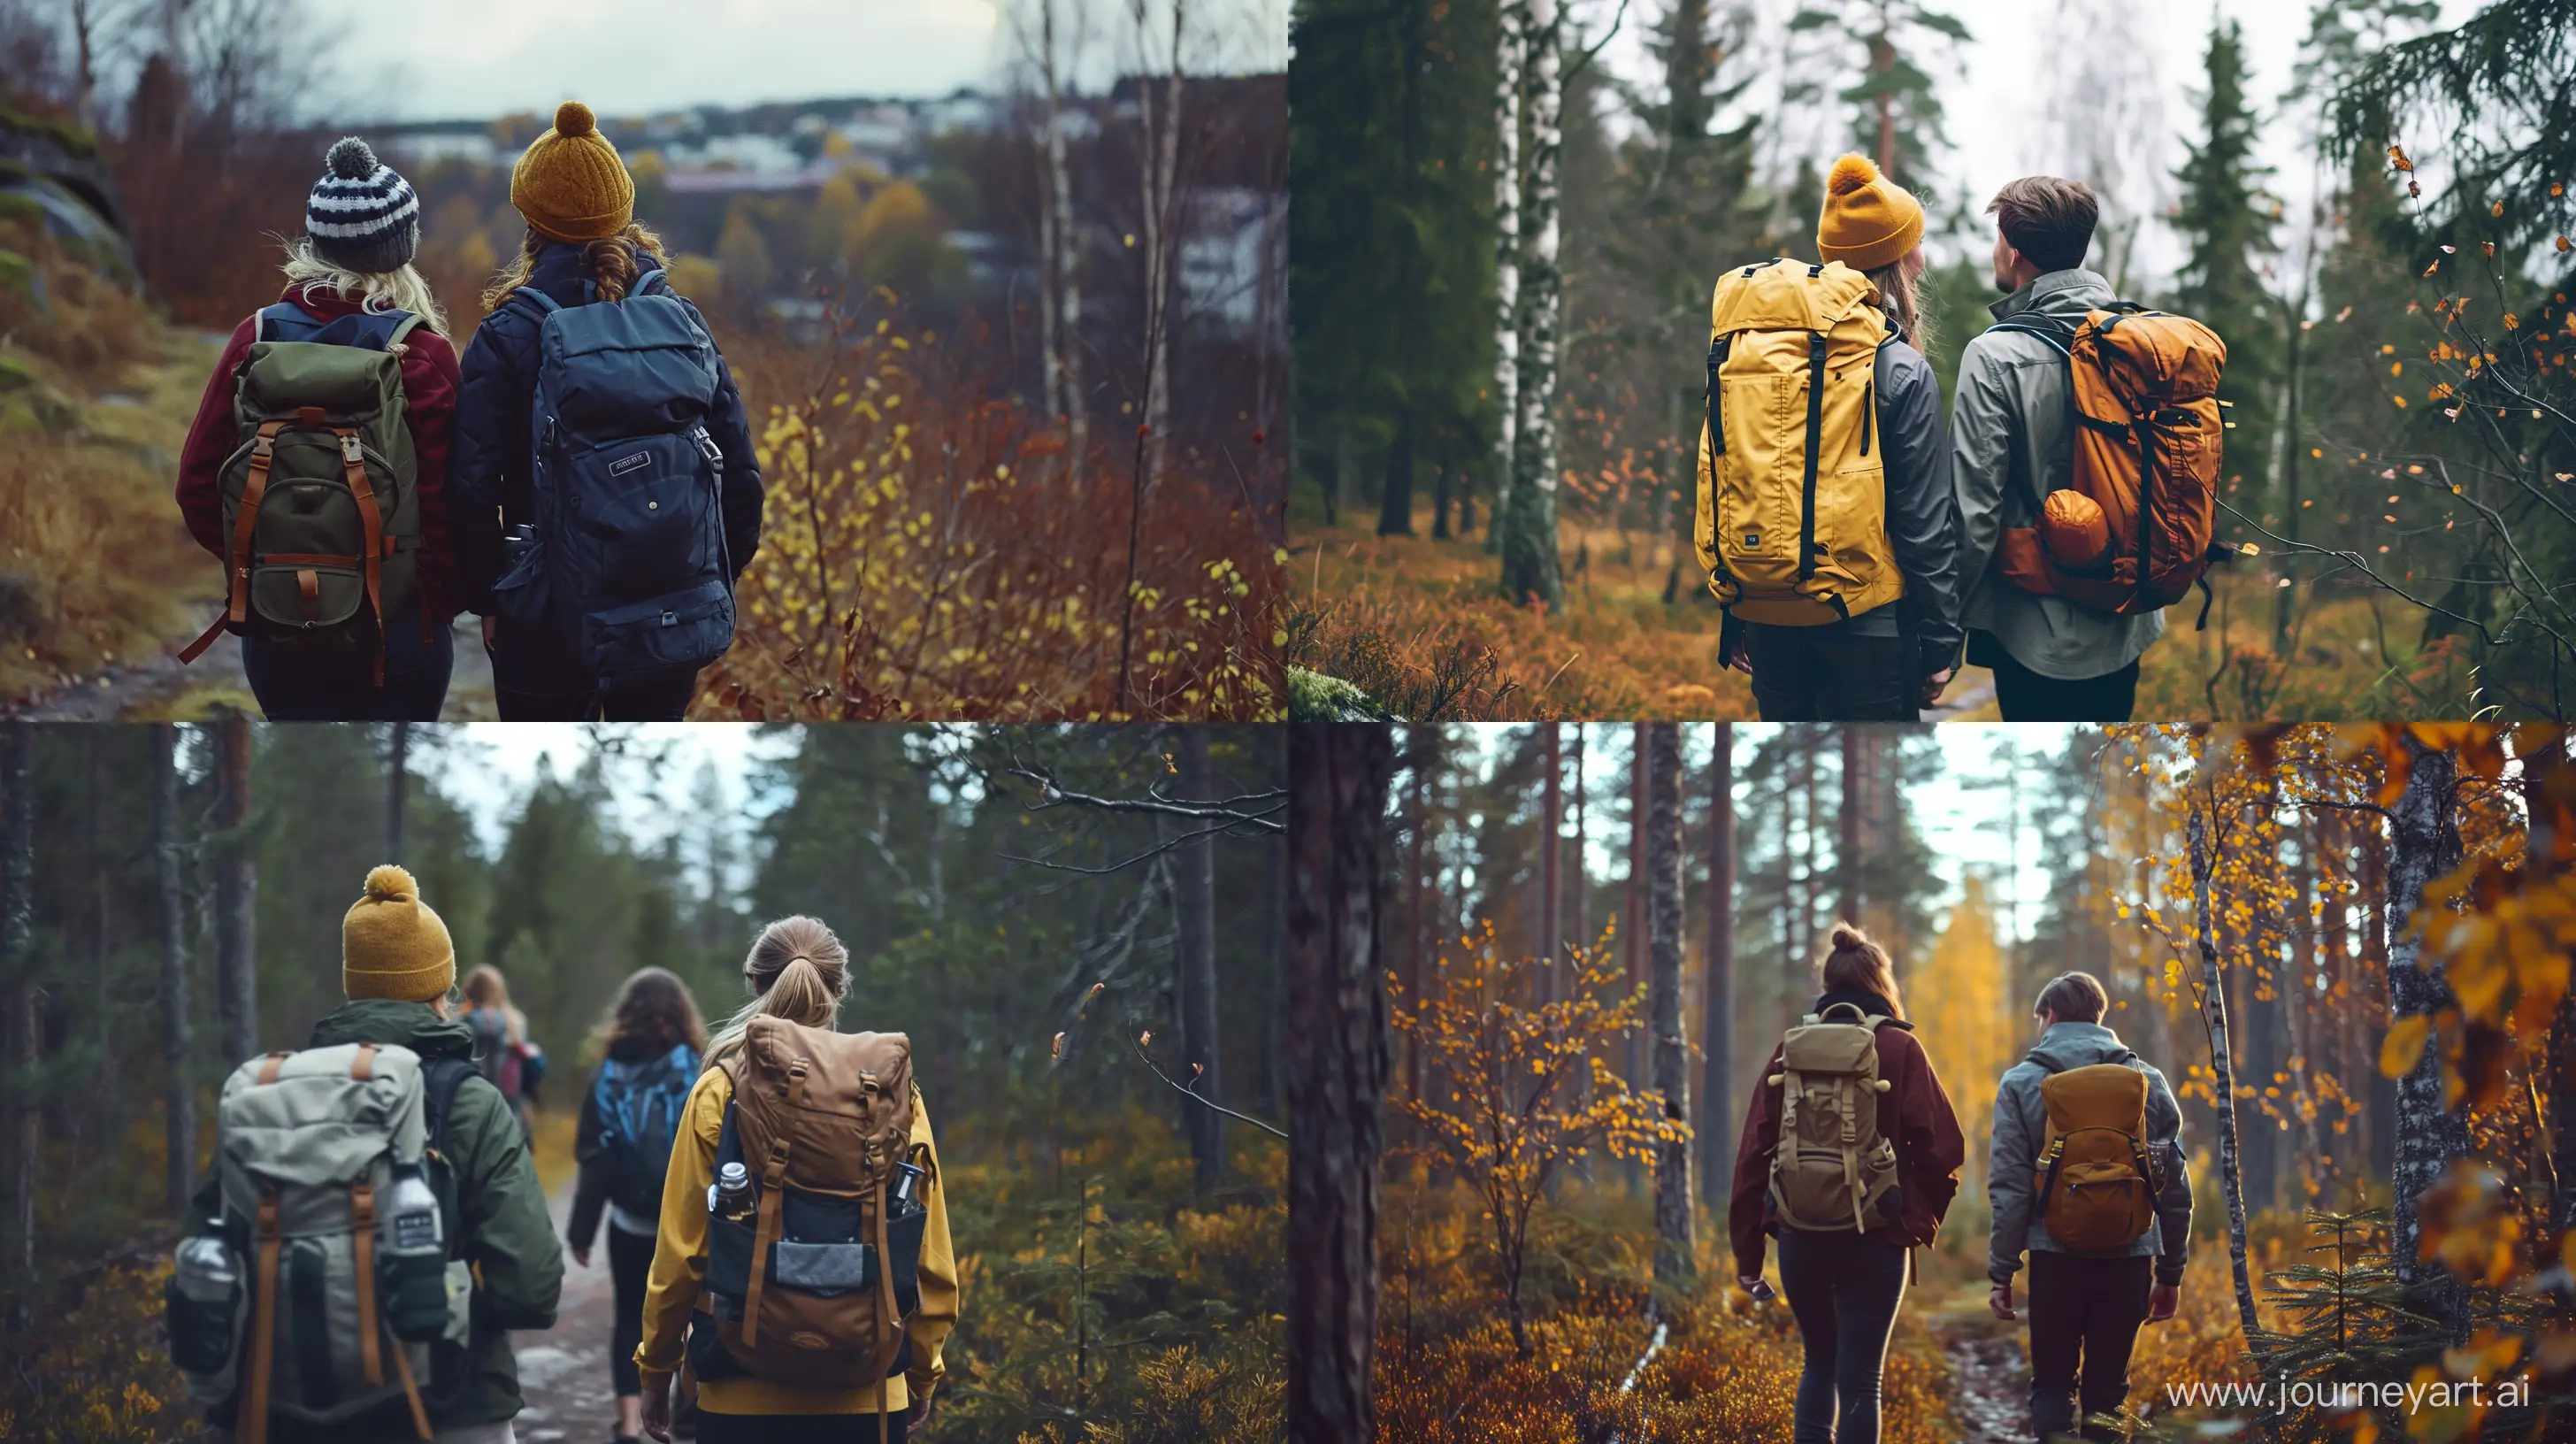 Diverse-Smart-Casual-Hiking-Adventure-in-Helsinki-School-Style